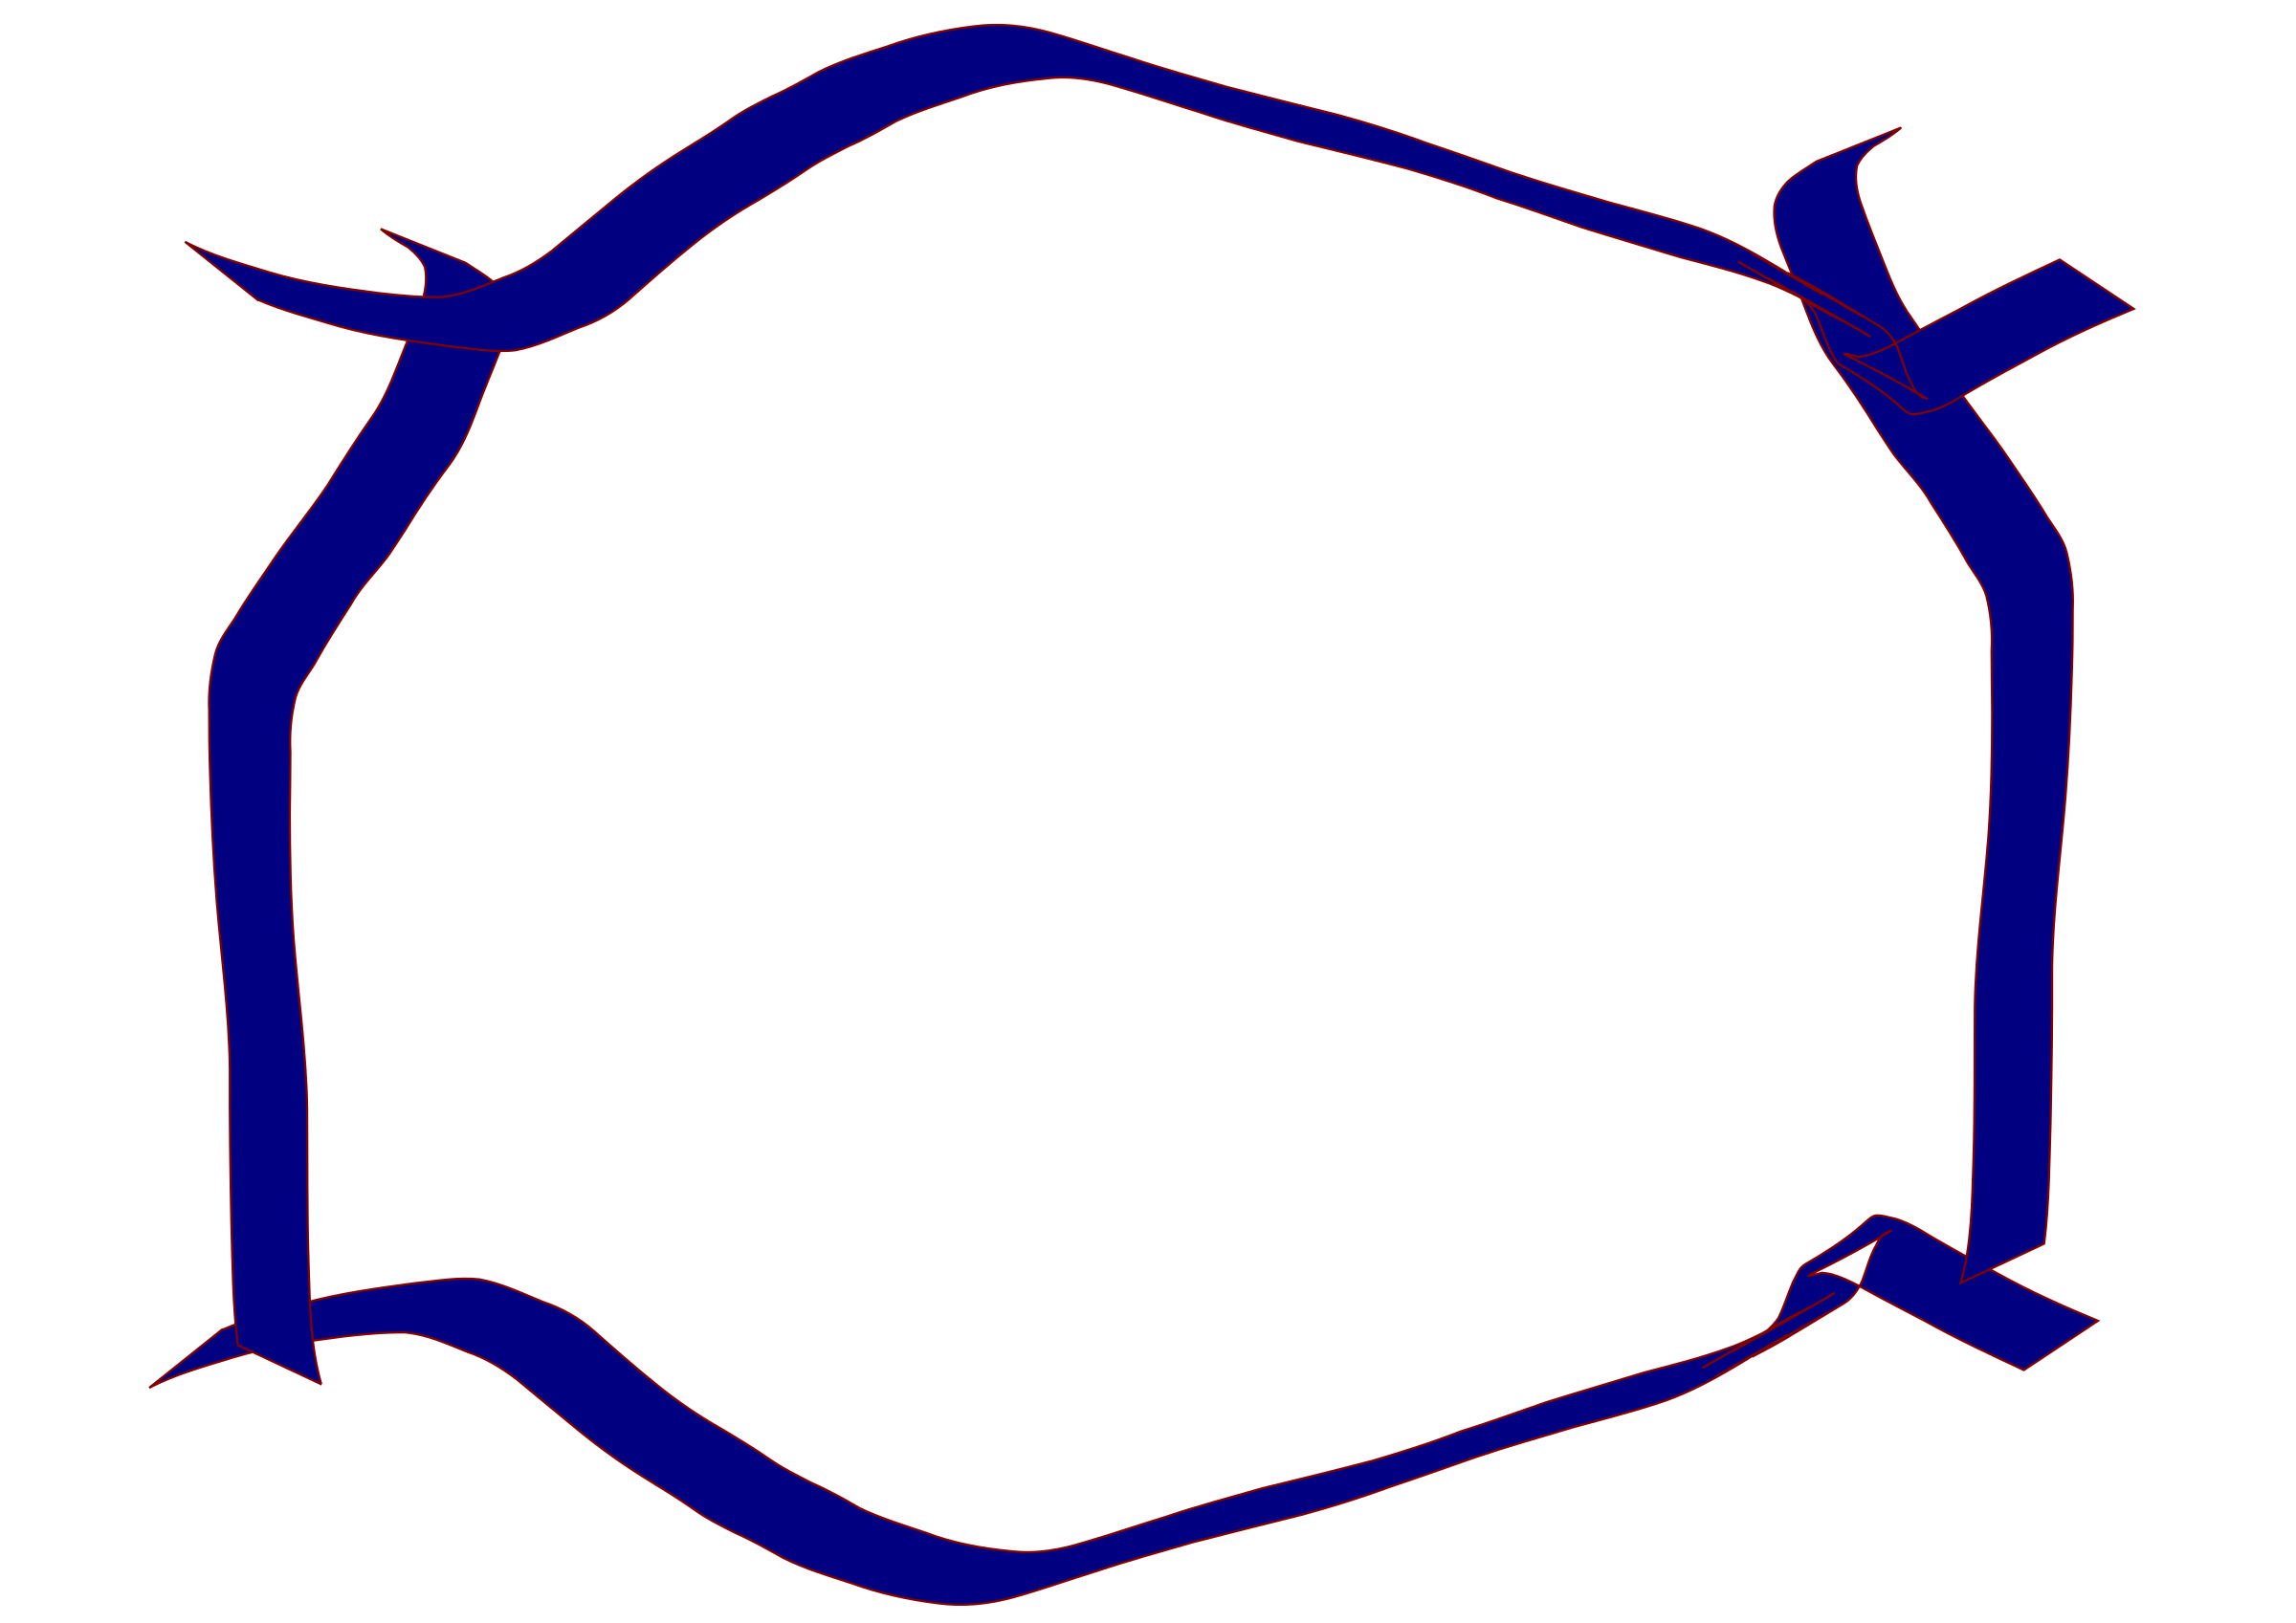 Clipart - Blue ribbon border